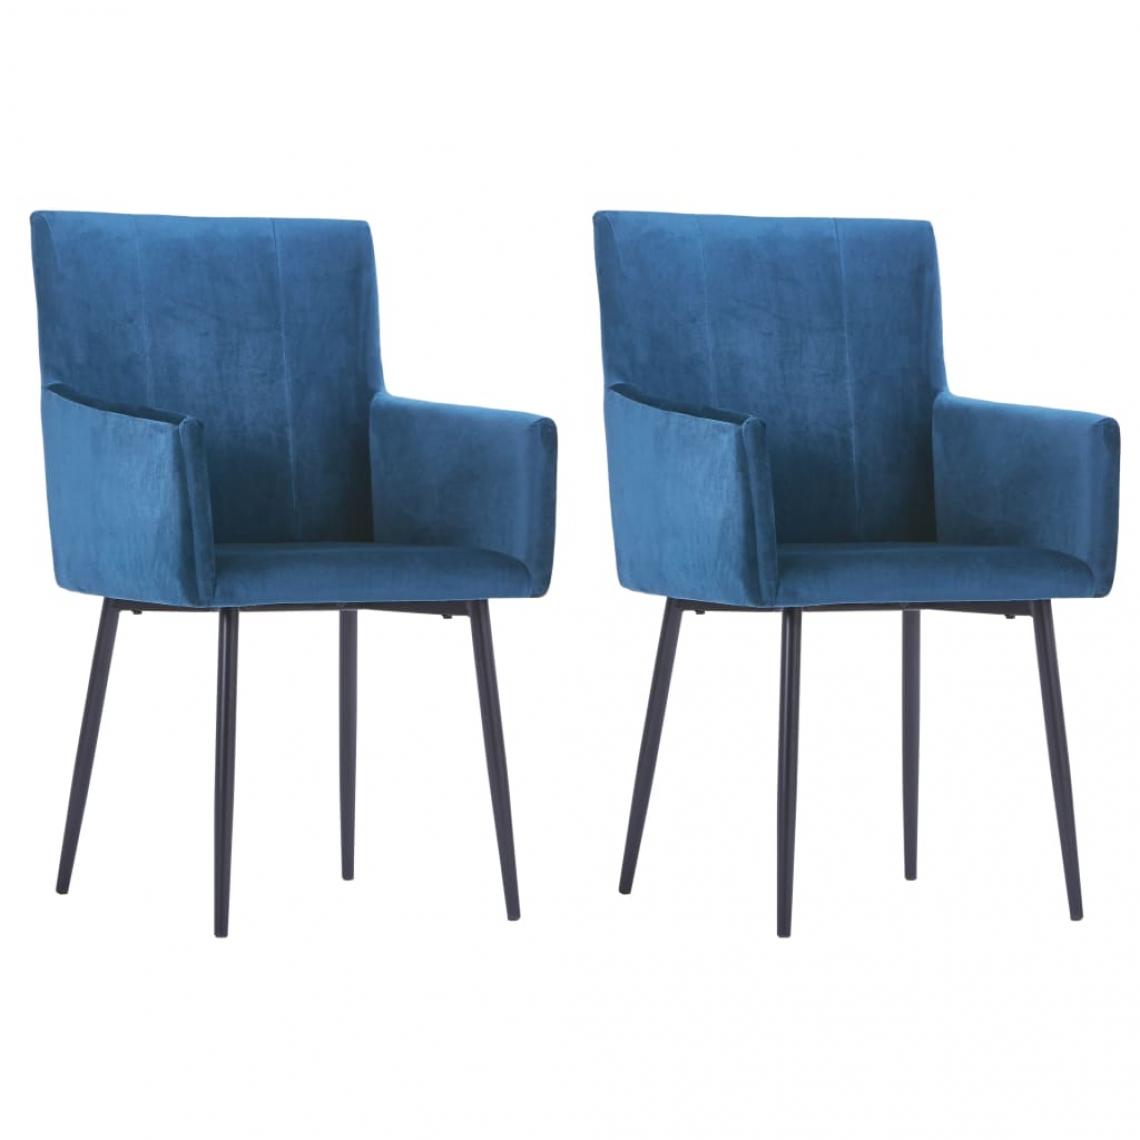 Decoshop26 - Lot de 2 chaises de salle à manger cuisine avec accoudoirs design moderne velours bleu CDS020134 - Chaises